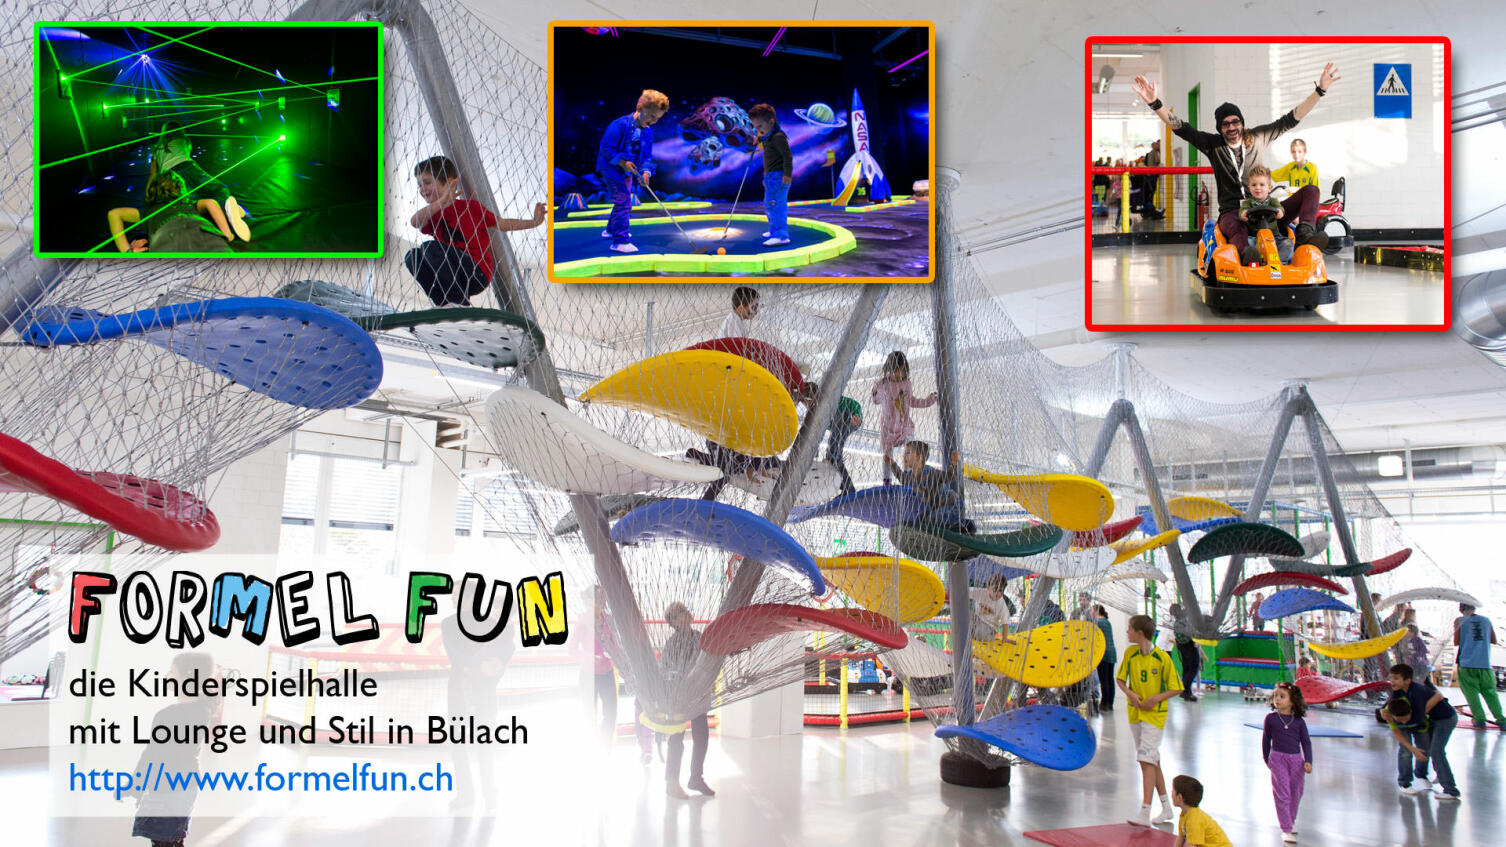 Formel Fun - das Kinderparadies mit Lounge und Stil